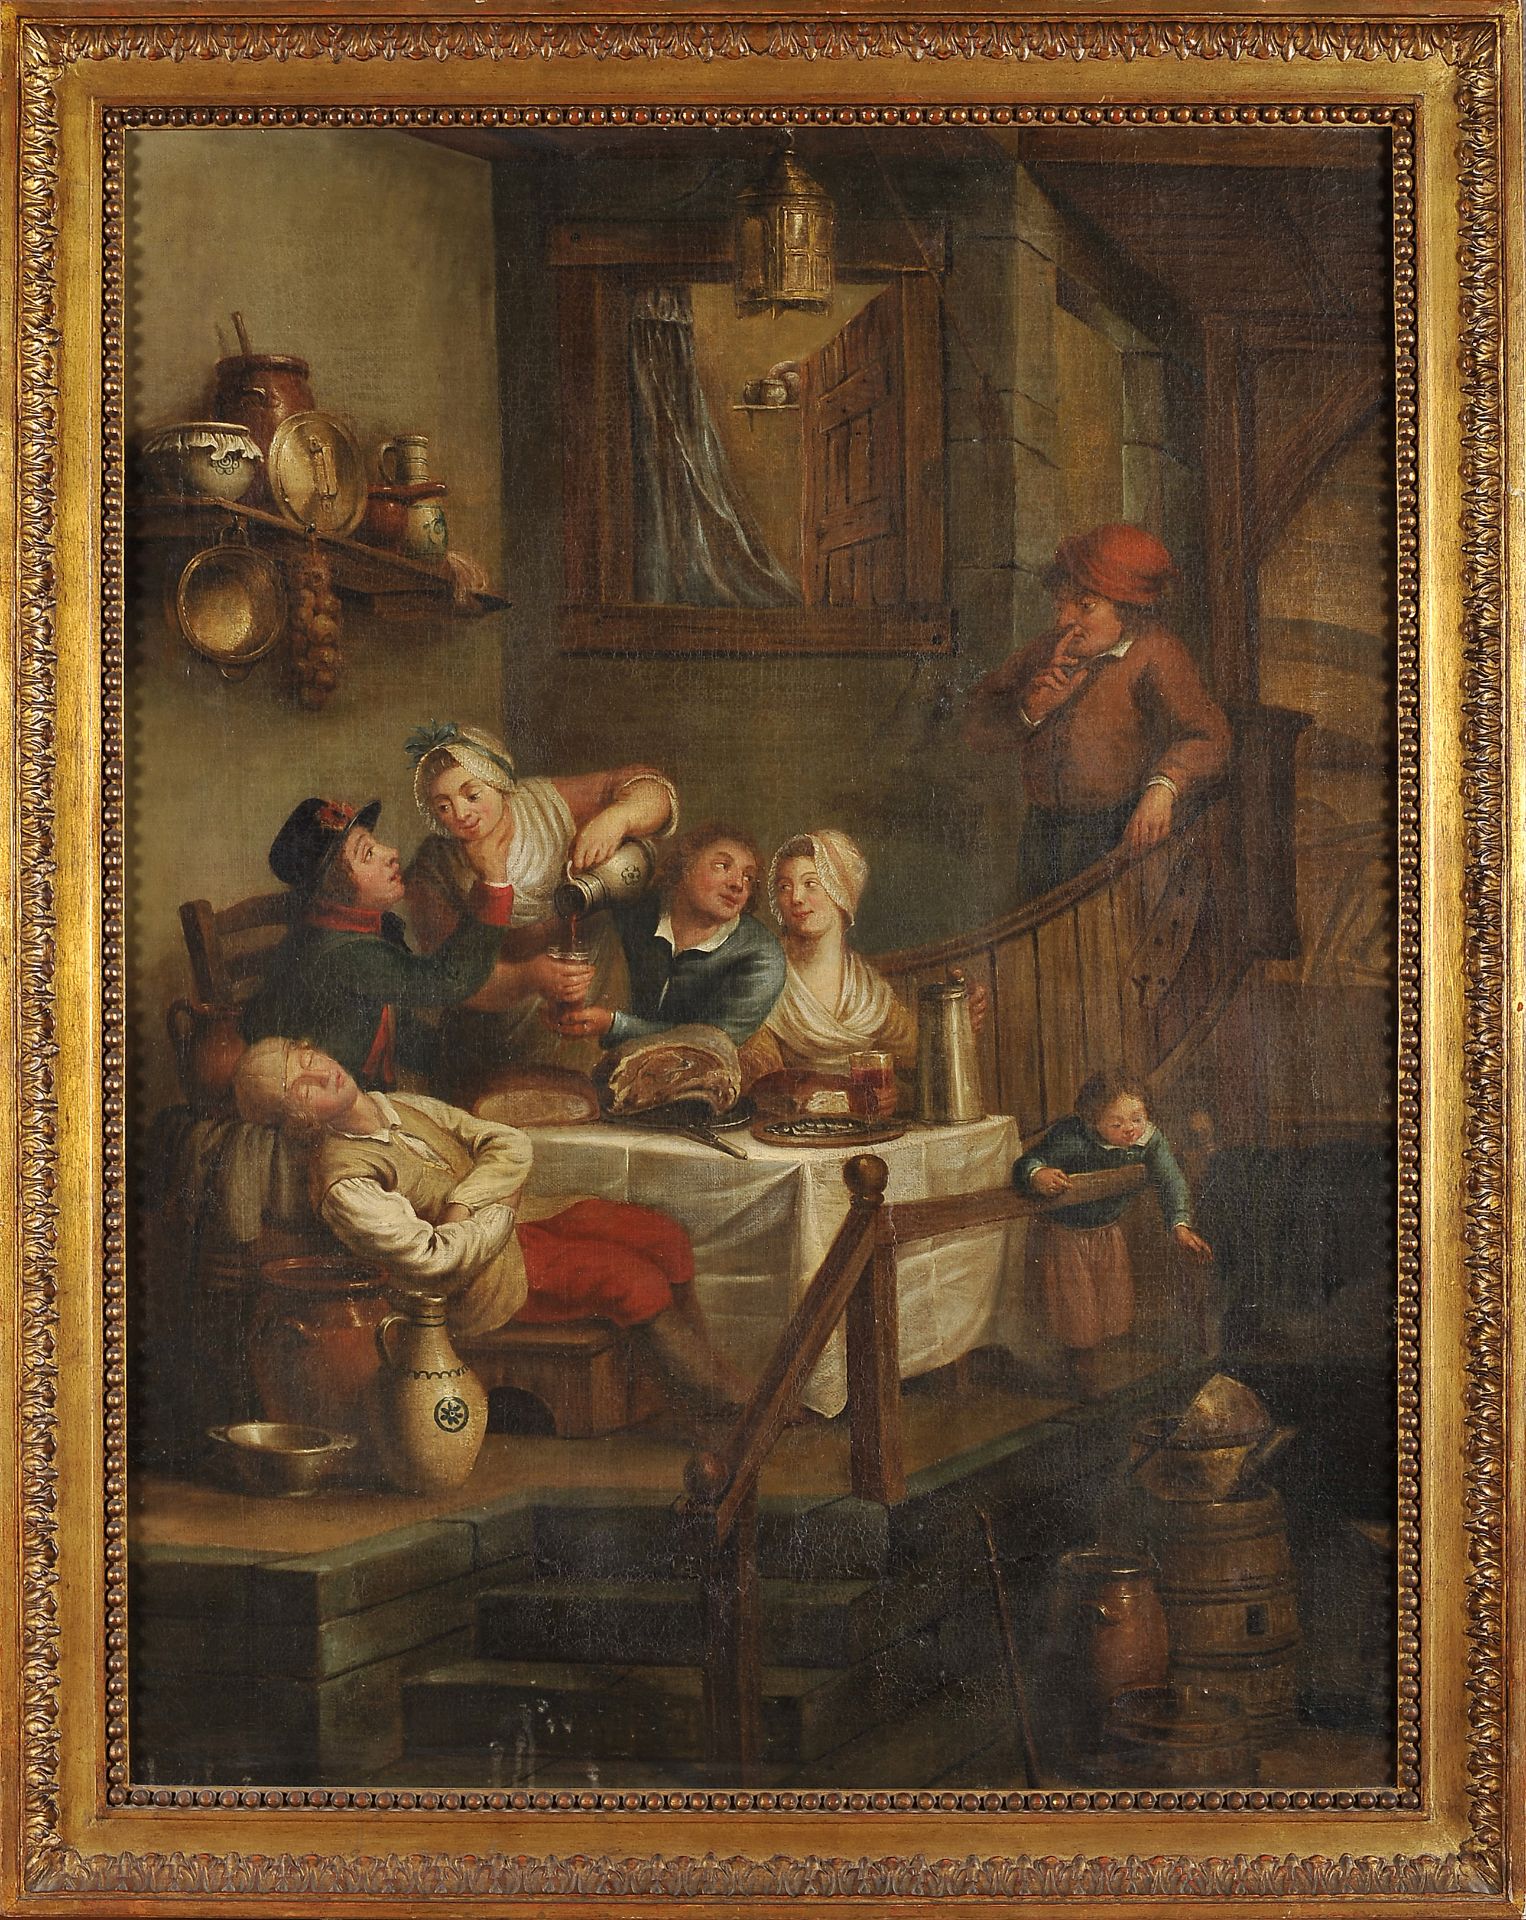 A tavern scene